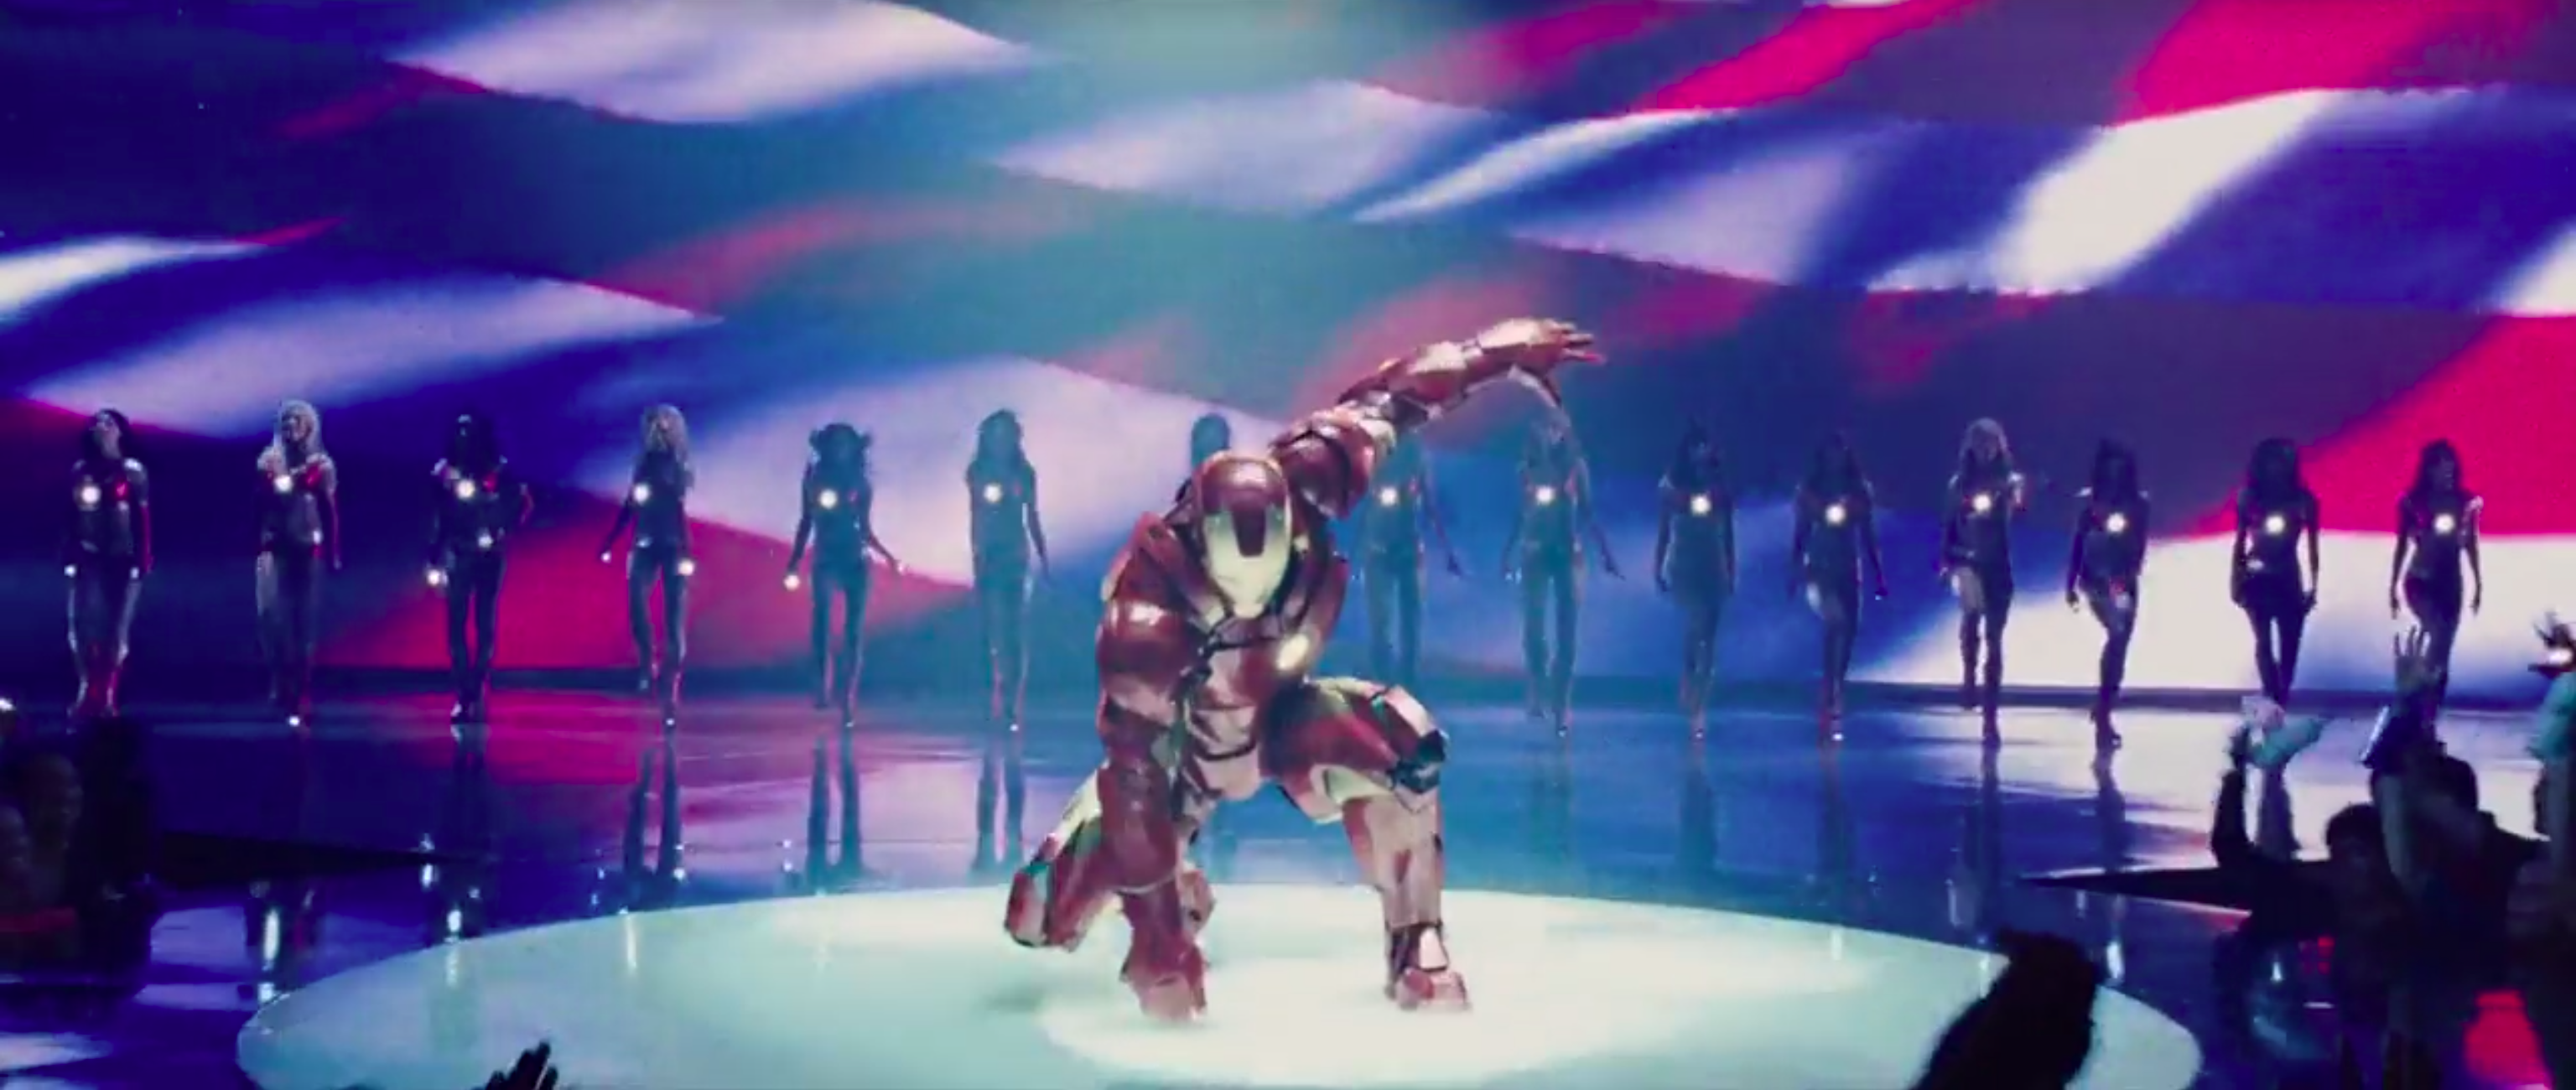  Stark Expo - Iron Man landing, Keynote Speech